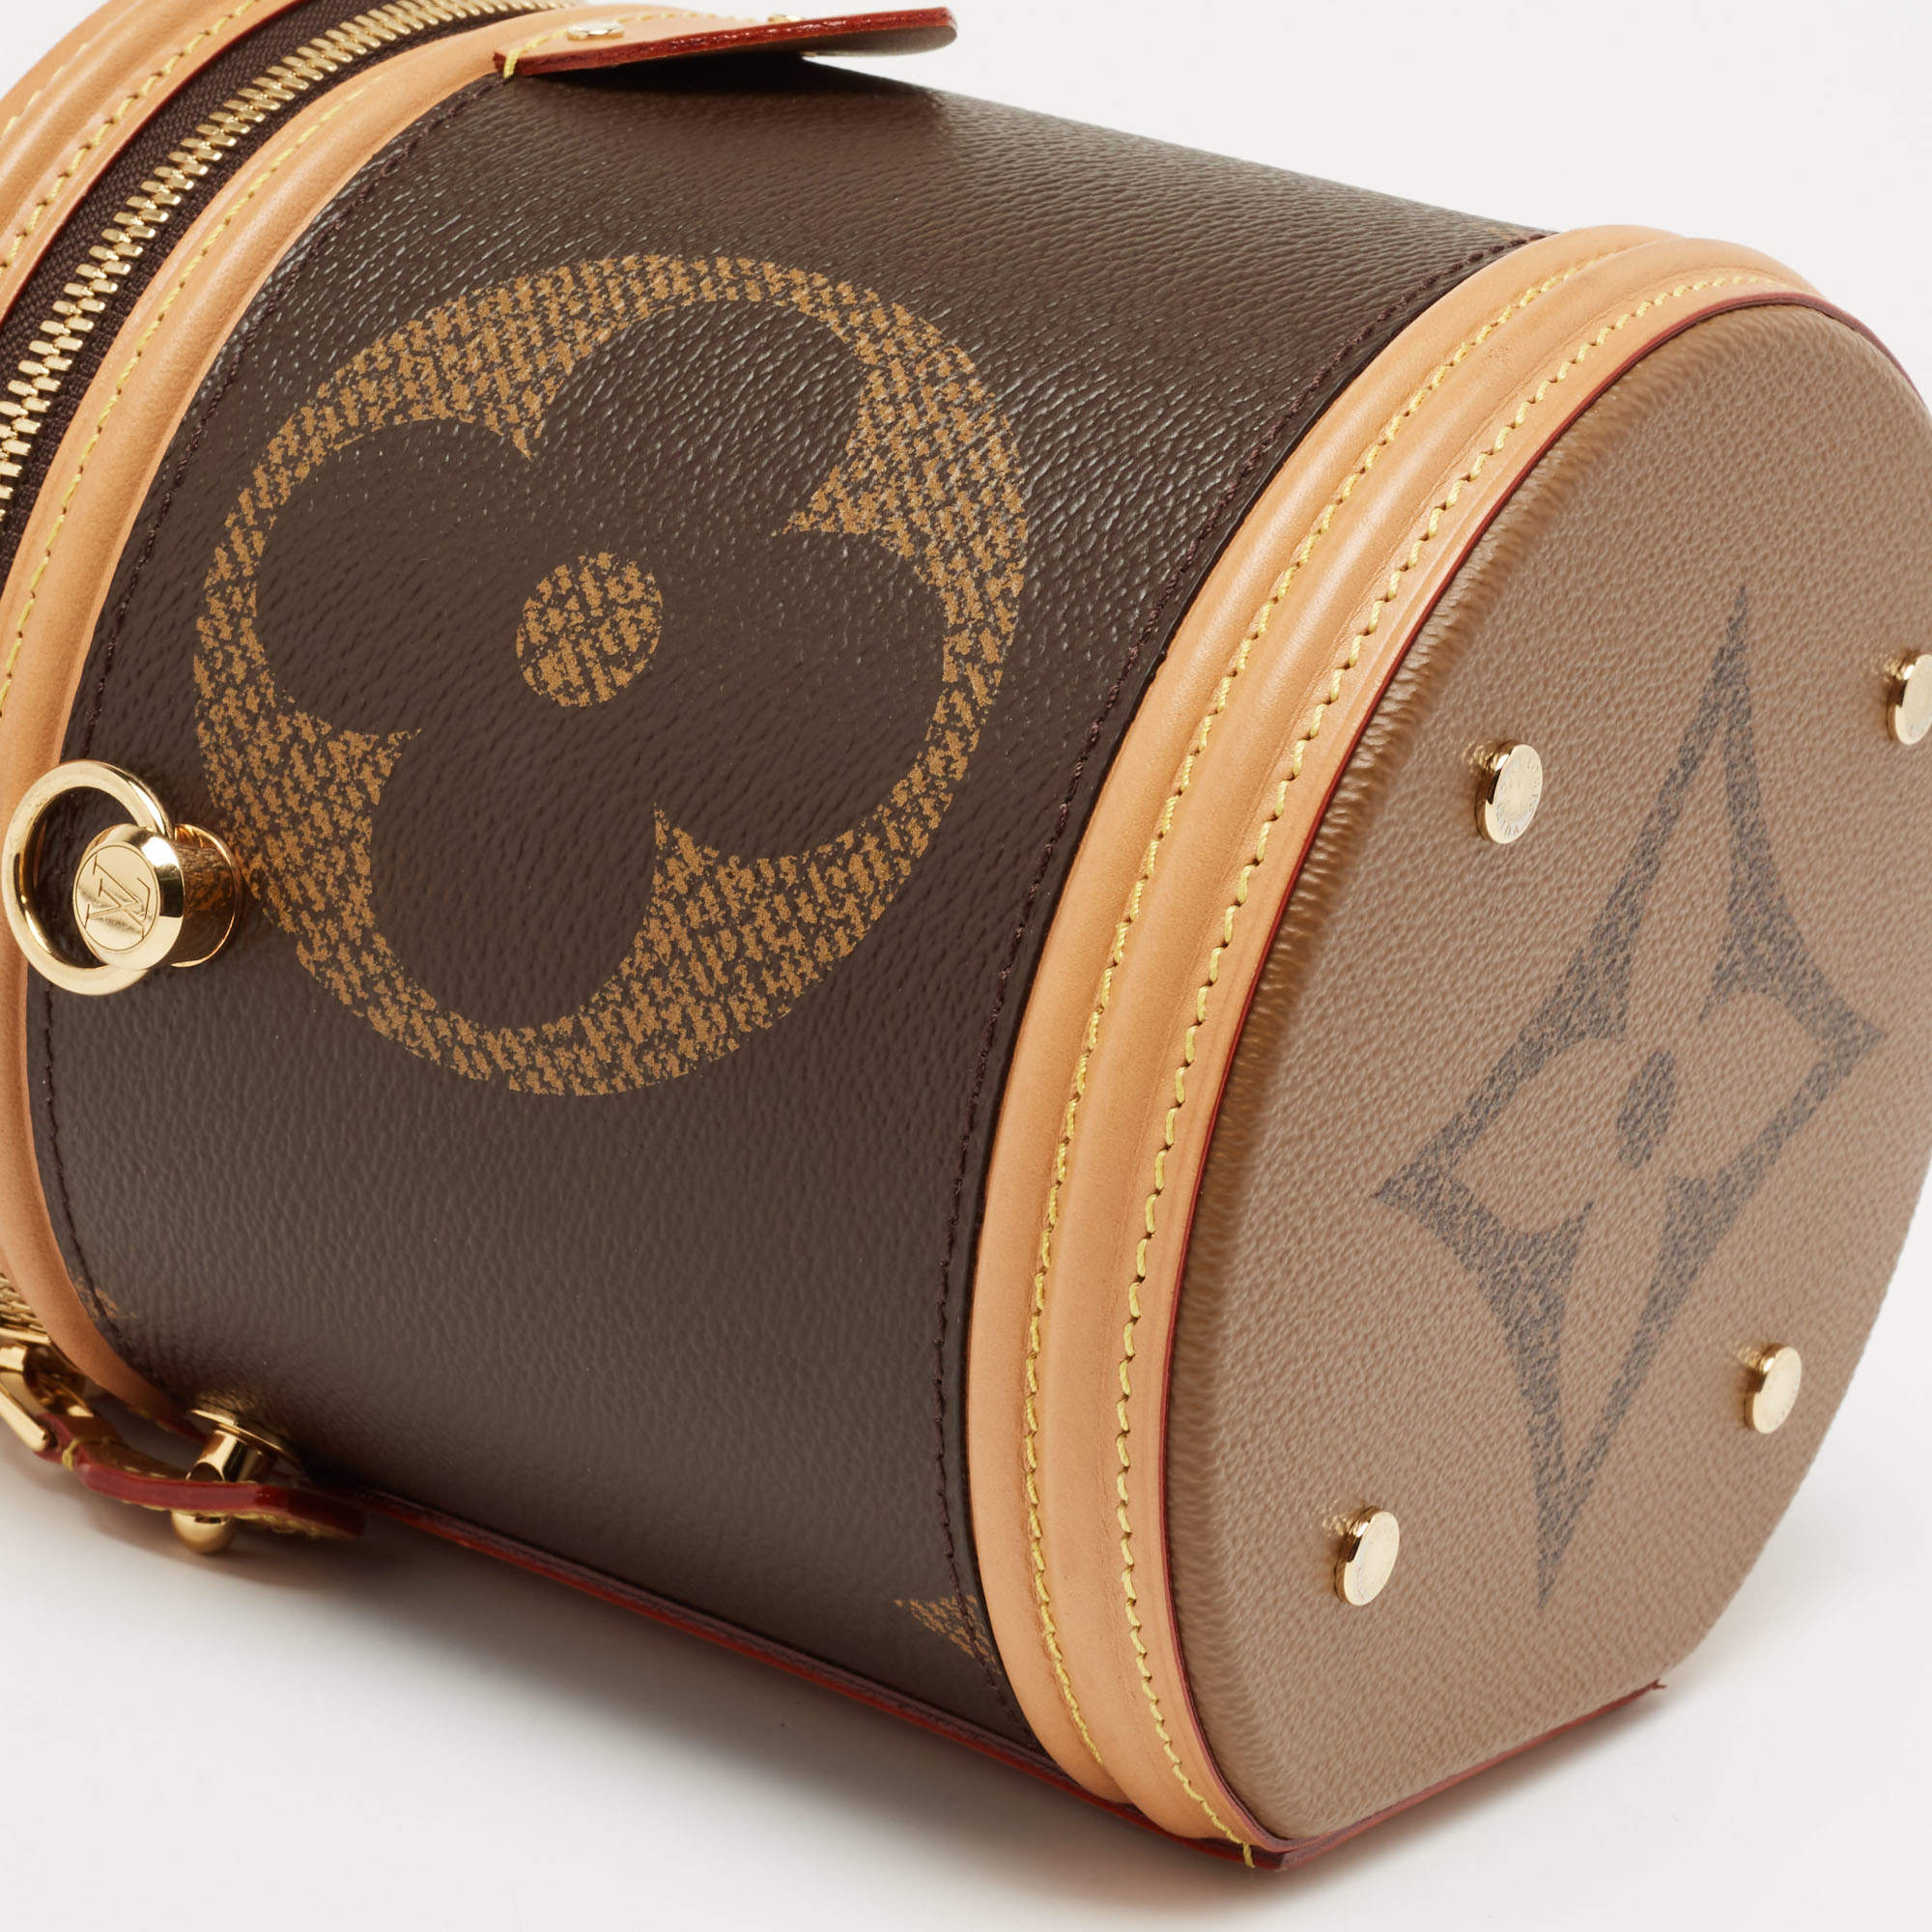 Cannes cloth handbag Louis Vuitton Brown in Cloth - 31605441